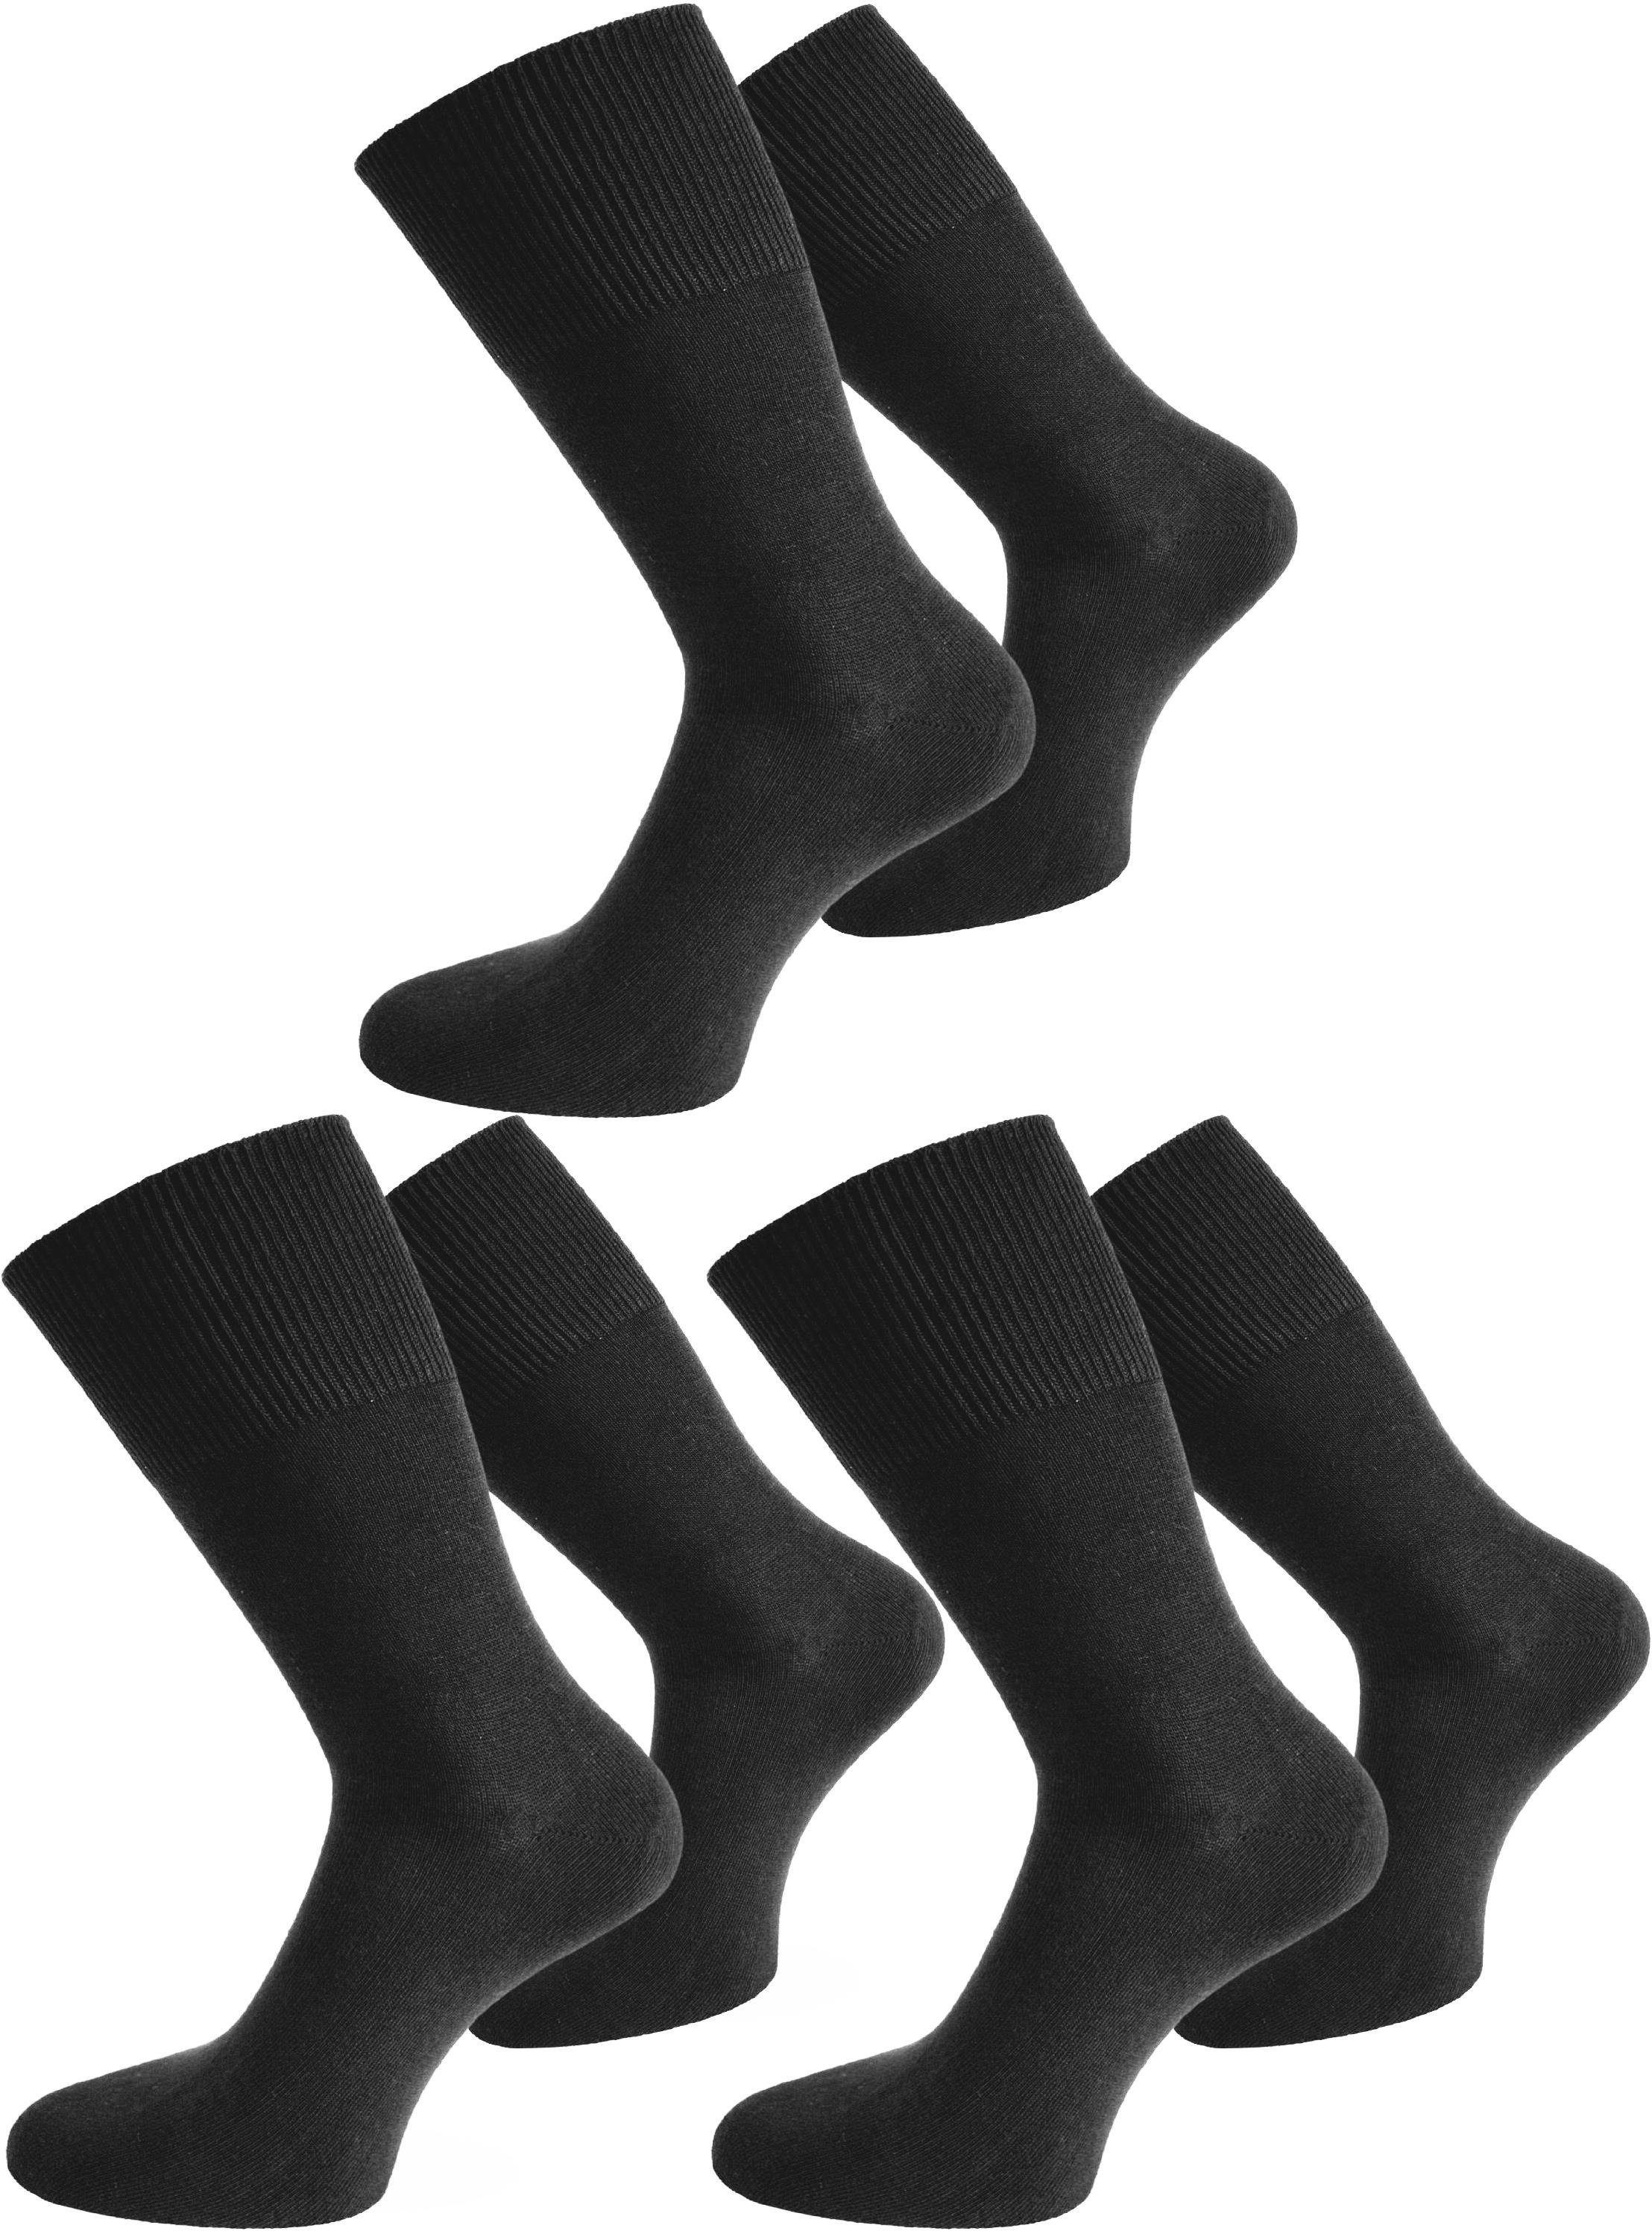 Modalfaser Basicsocken Paar natürlicher natürlicher mit normani mit 6 Paar) 6 Socken (6er-Set, Modalfaser